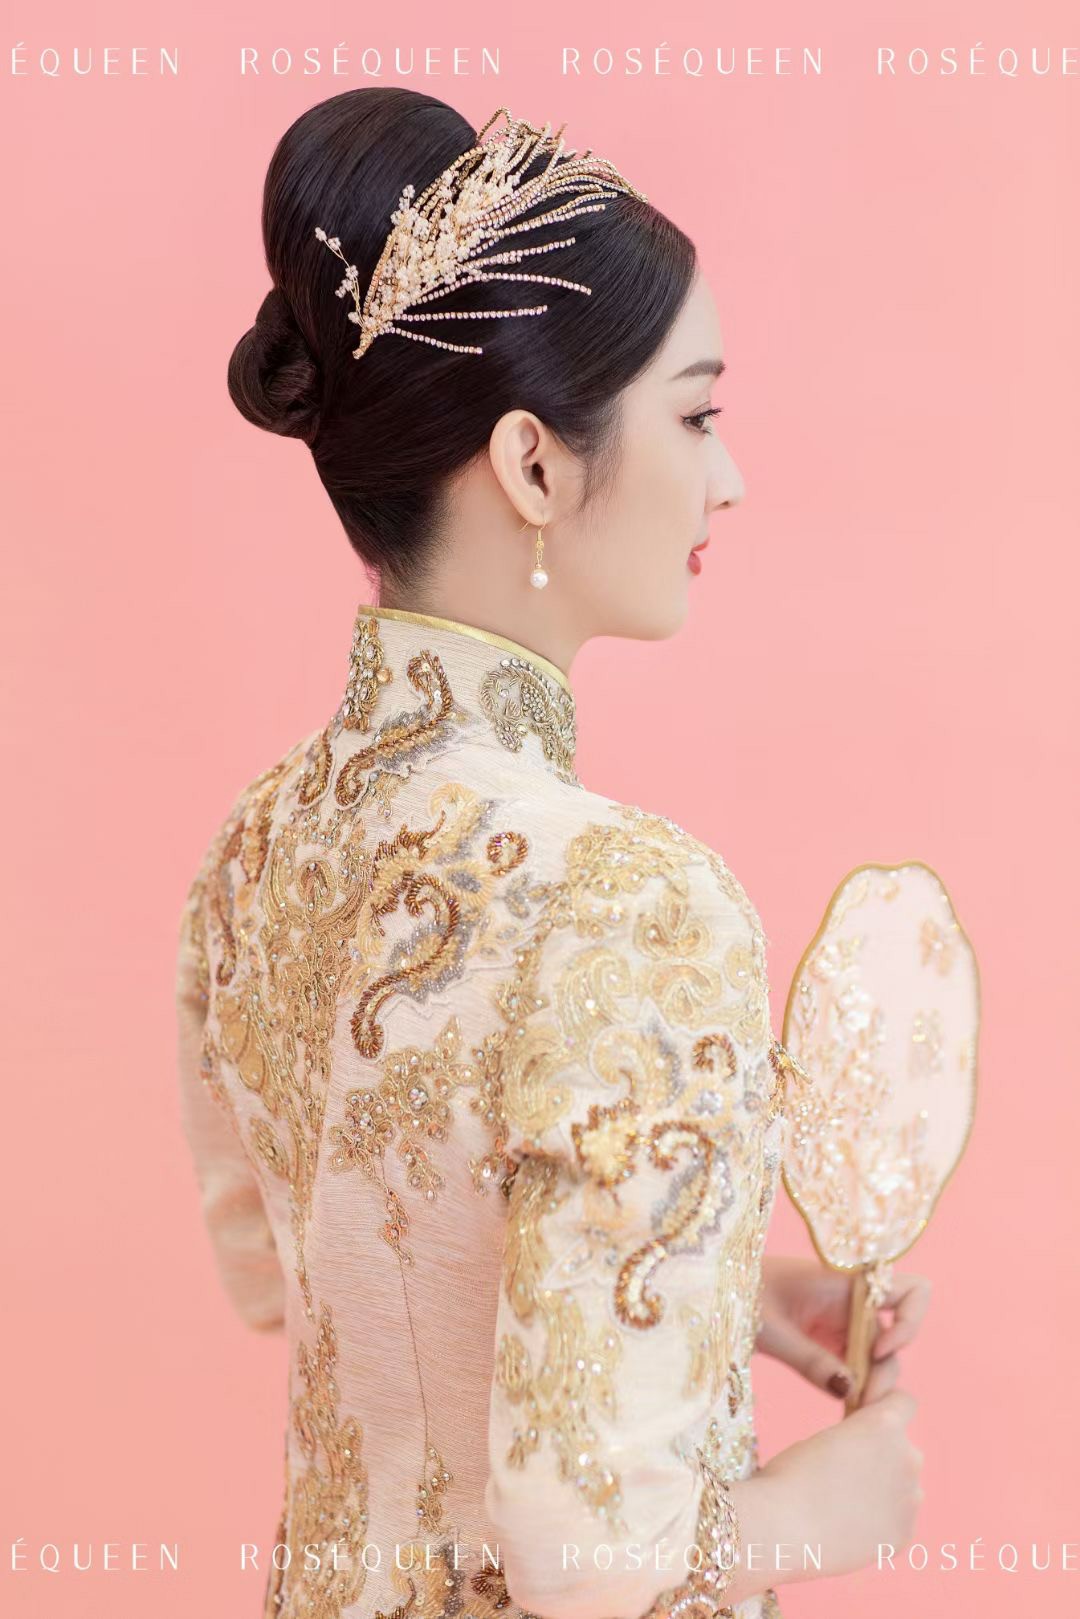 中式结婚头发造型图片-图库-五毛网